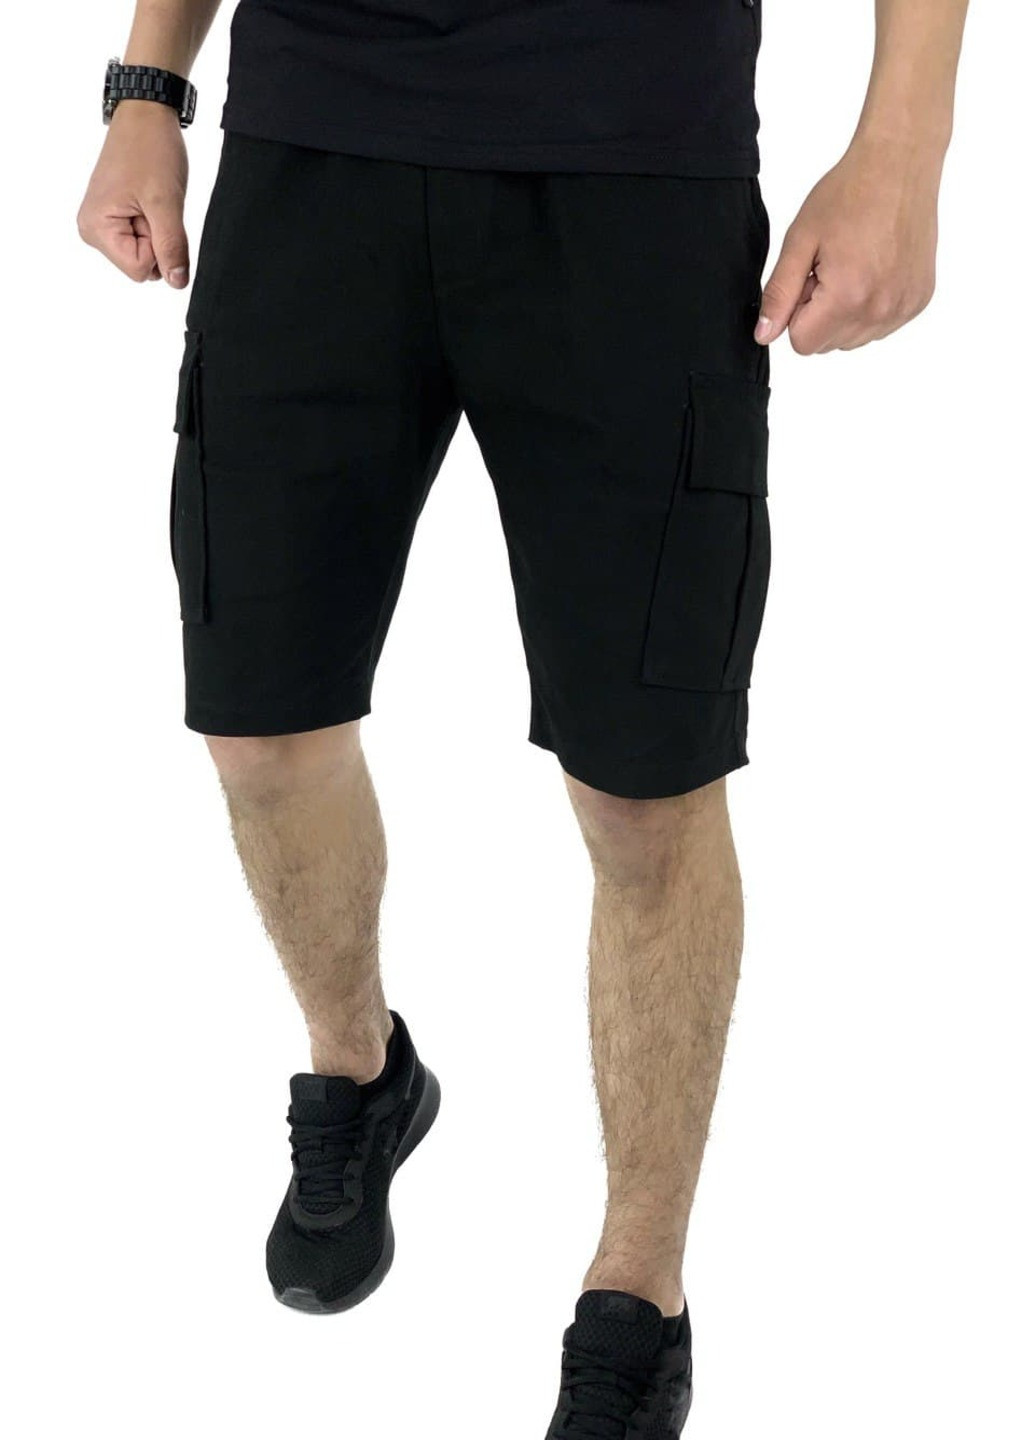 Комбінований літній костюм літній чоловічий (футболка "color stripe" сіра - чорна + шорти miami чорні) Intruder